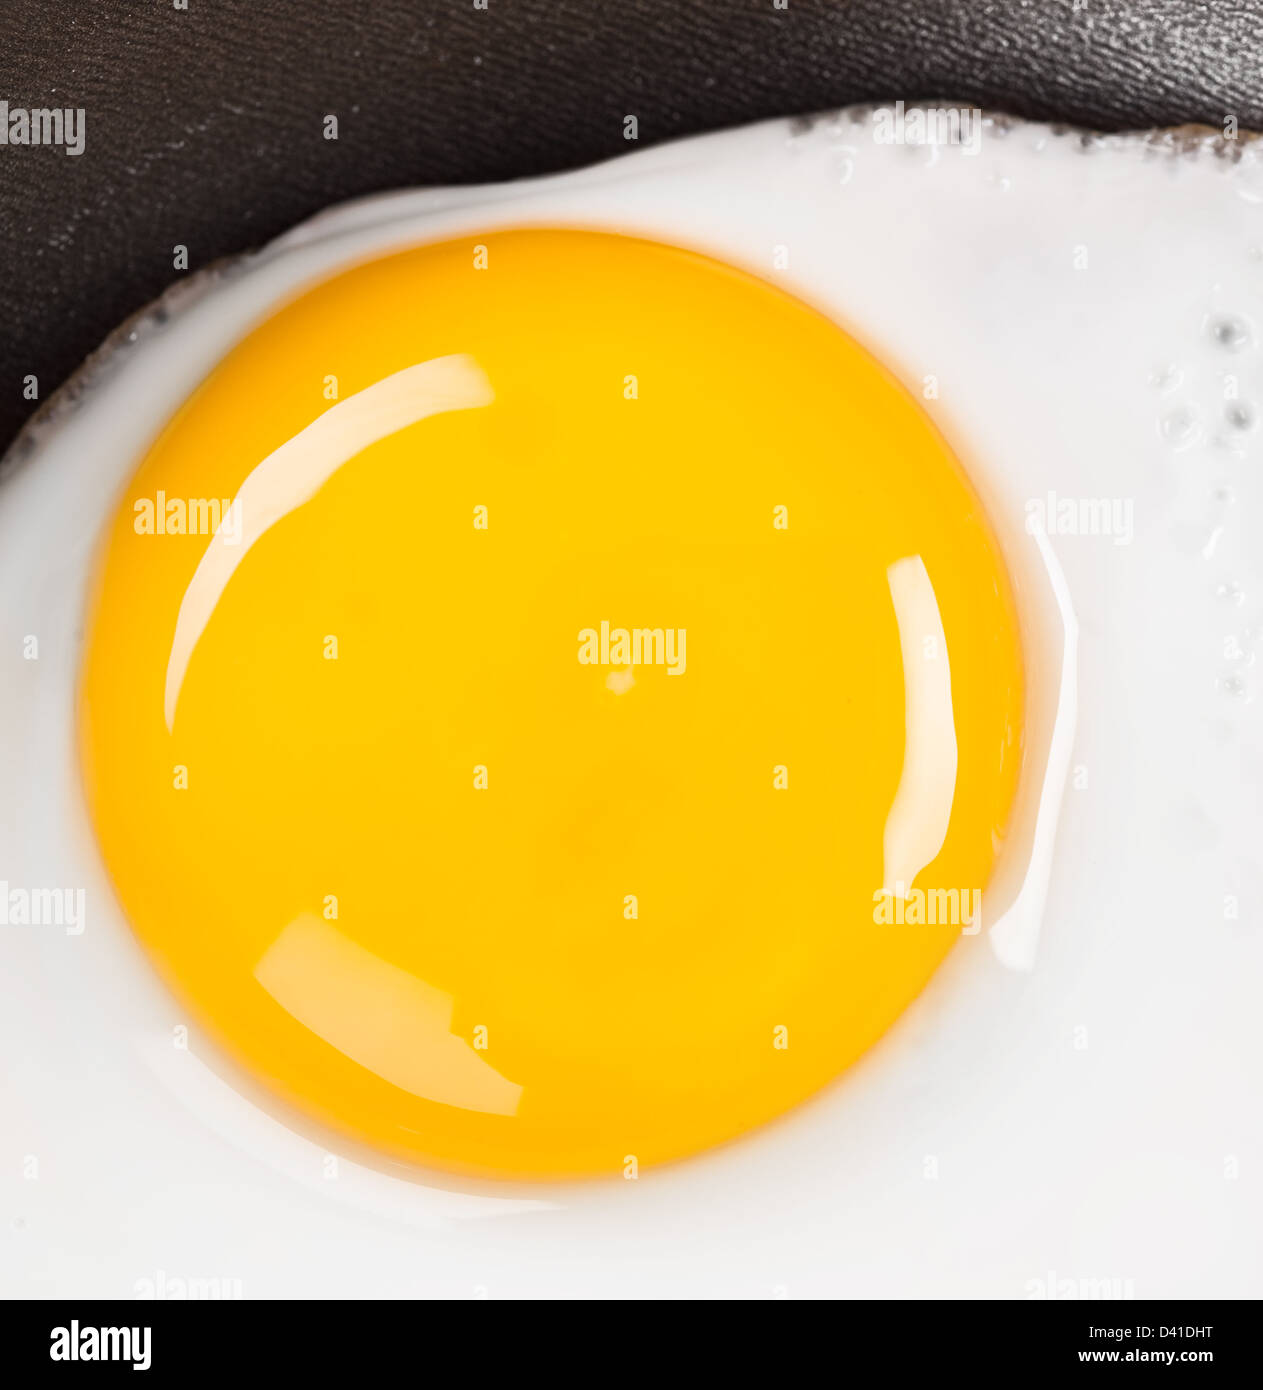 Foto di uova fritte close up, prima colazione Foto Stock